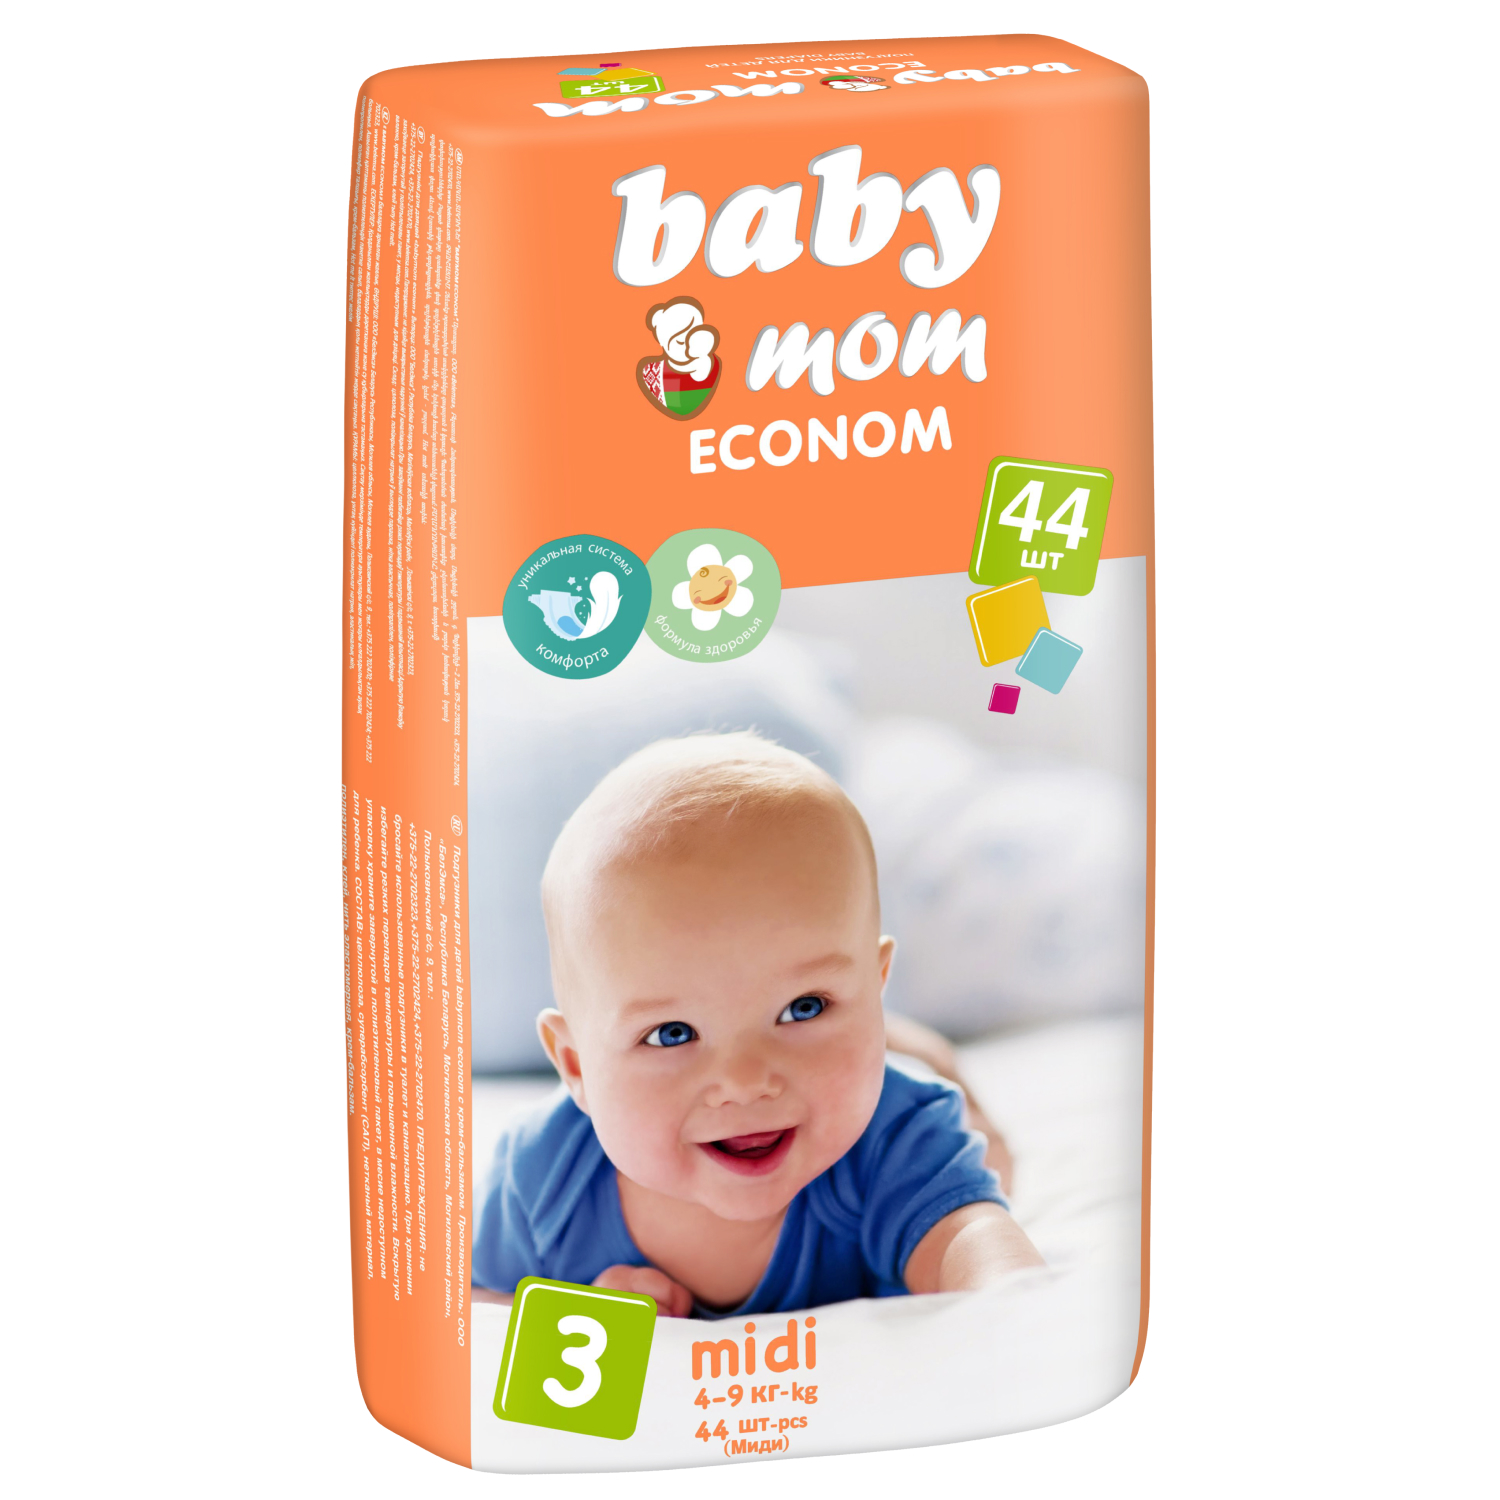 Подгузники baby mom ECONOM, размер 3 midi, 4-9 кг, 44 шт.